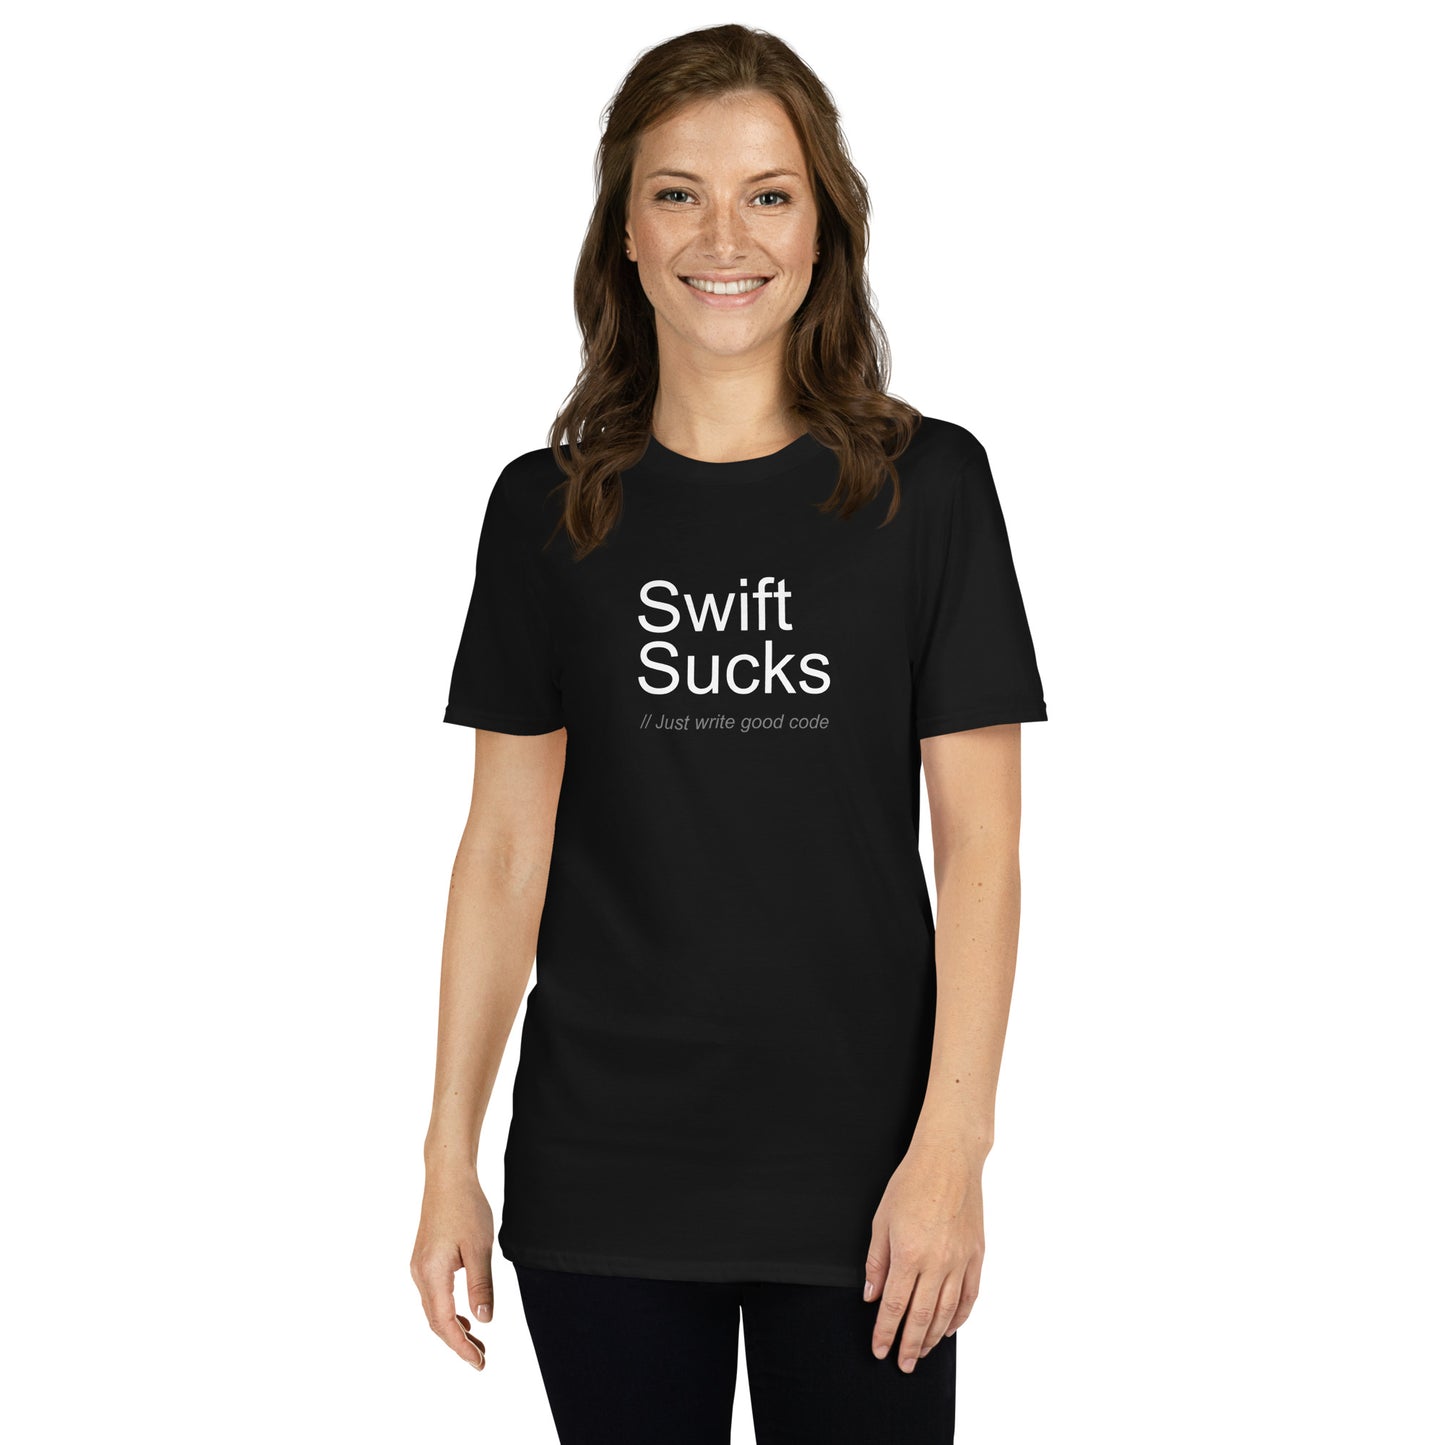 Swift Sucks